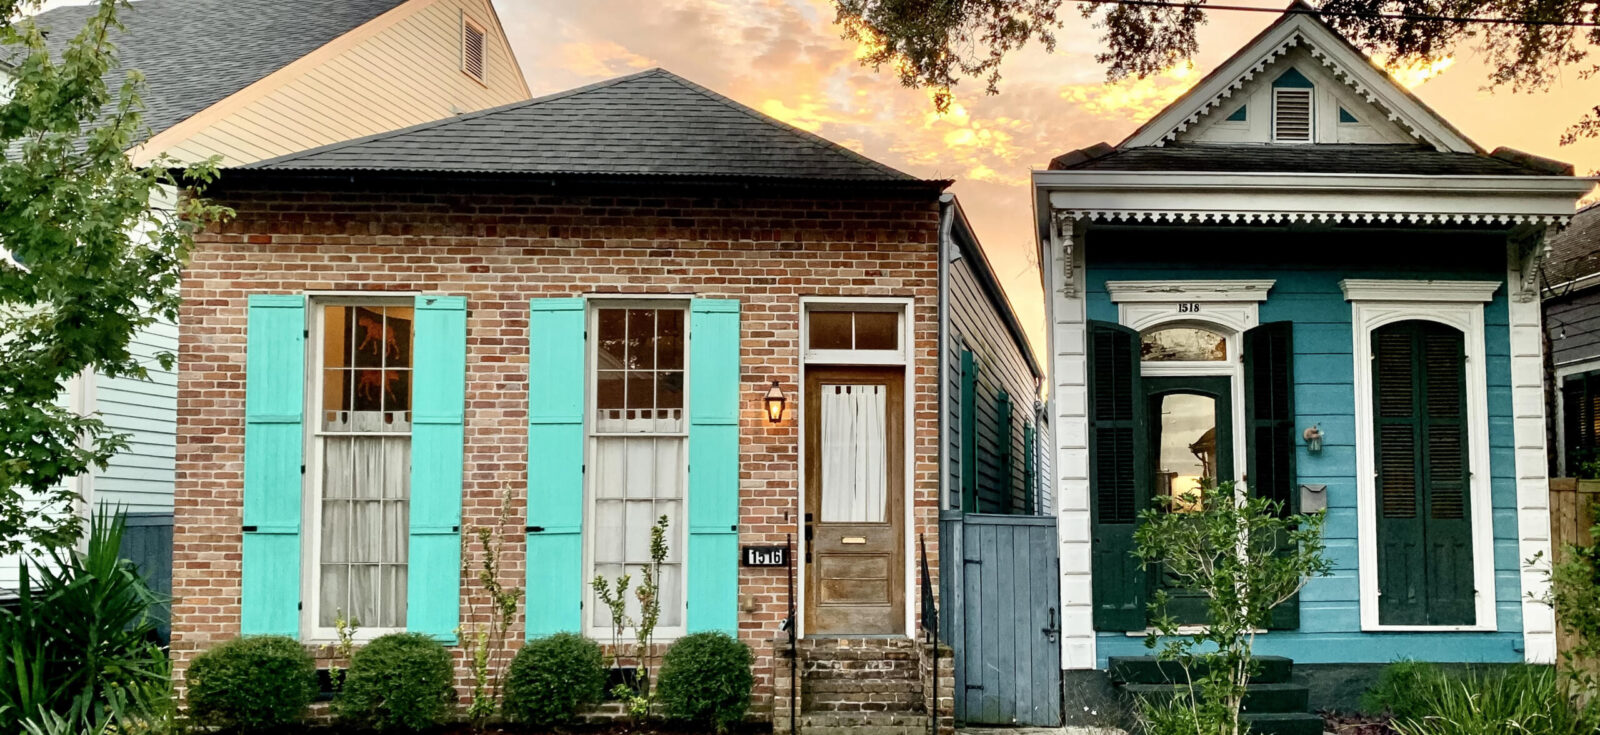 Maisons de type shotgun de la Nouvelle-Orléans